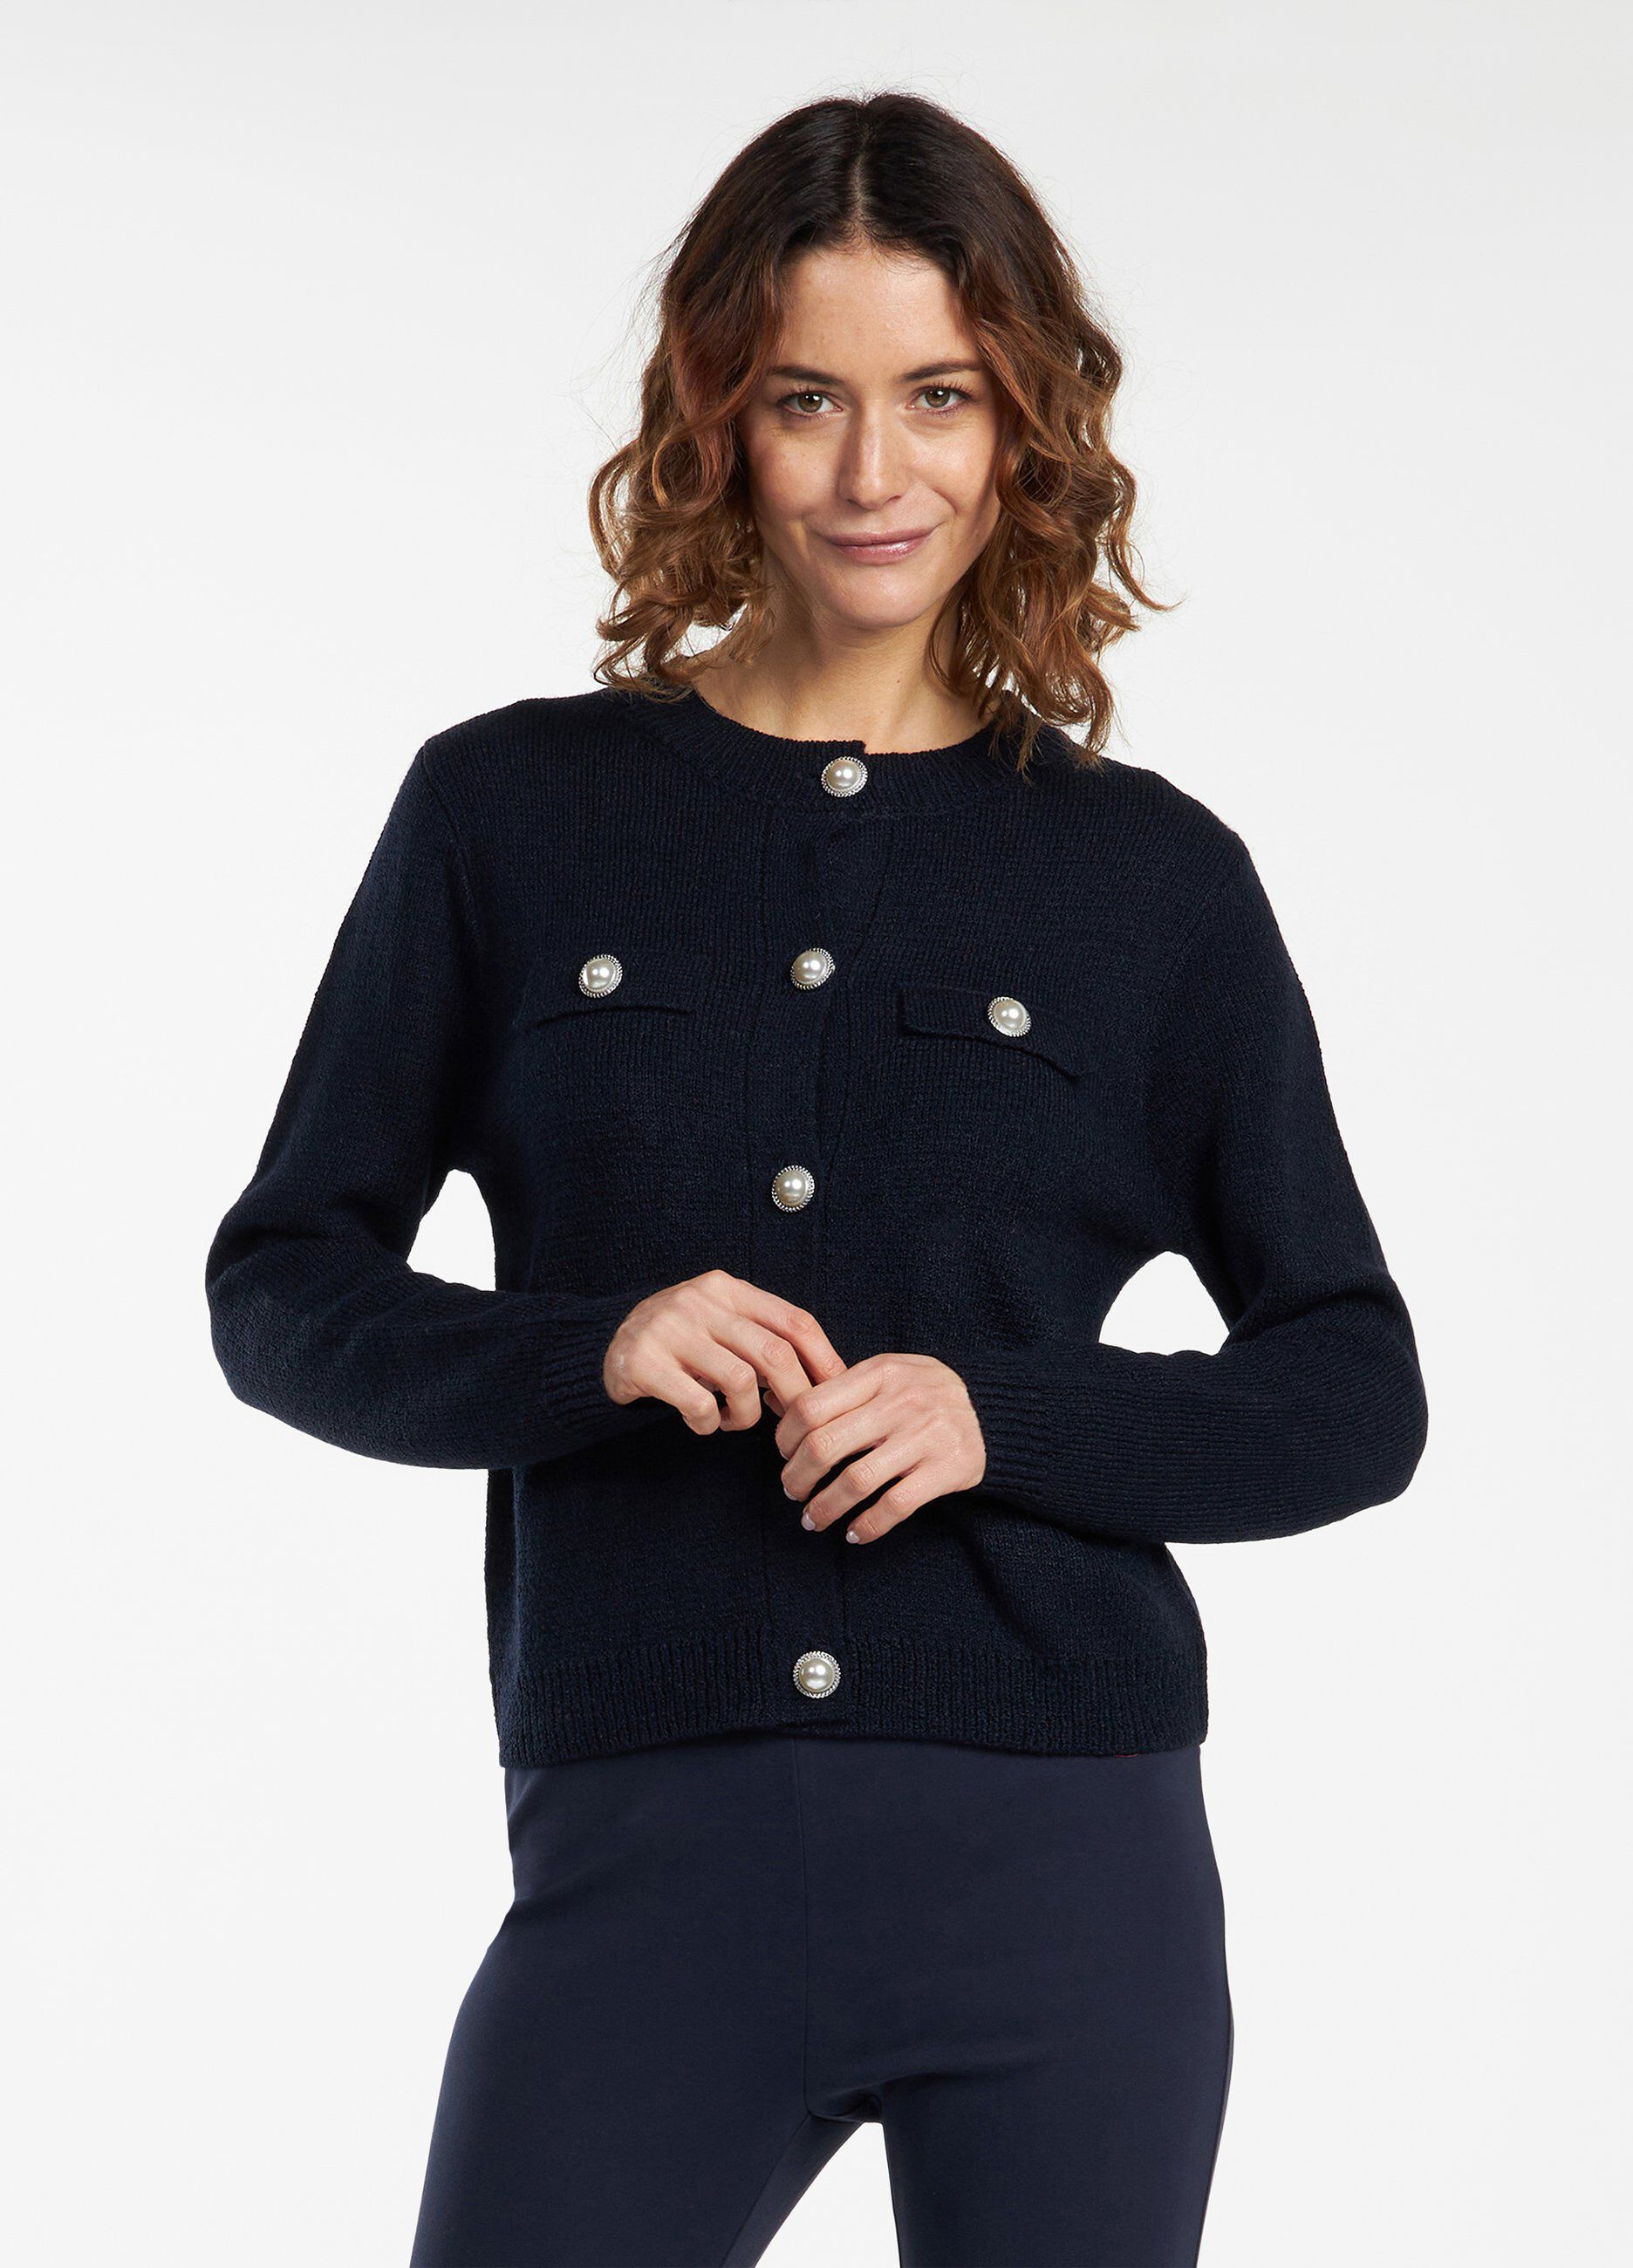 Cappottino tricot donna_2